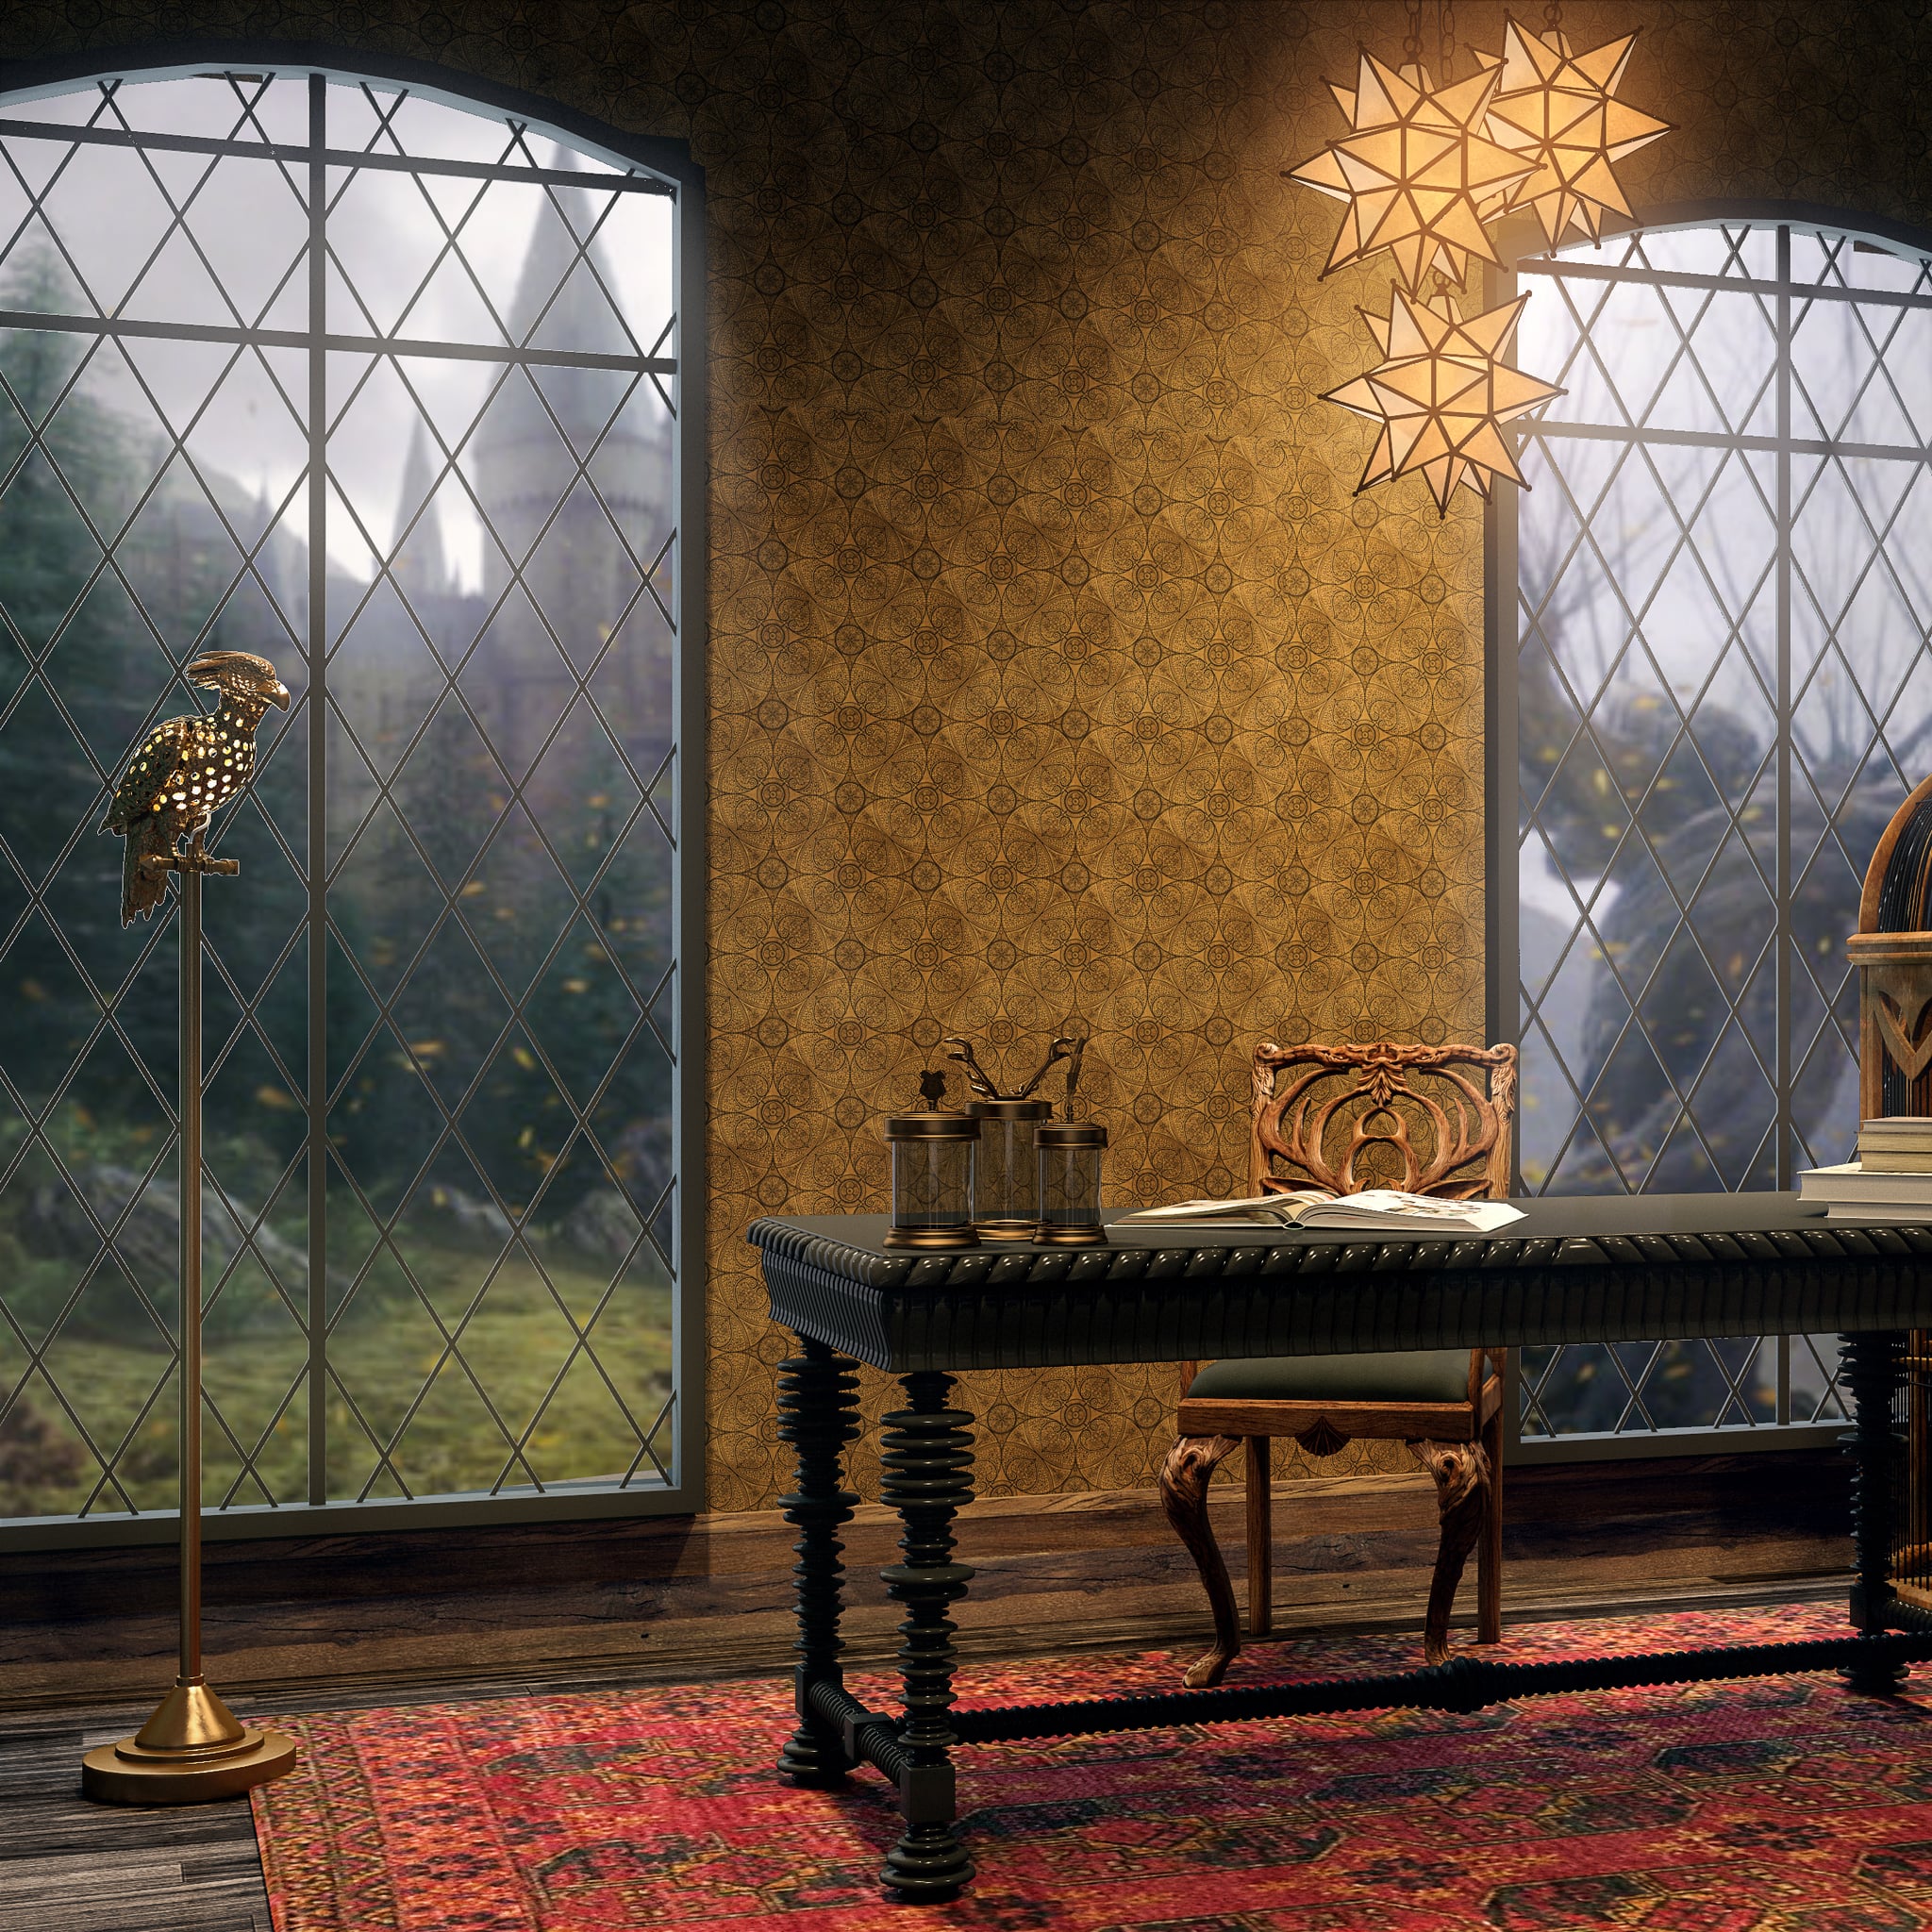 Harry Potter Home Decor For Adults | POPSUGAR Home UK